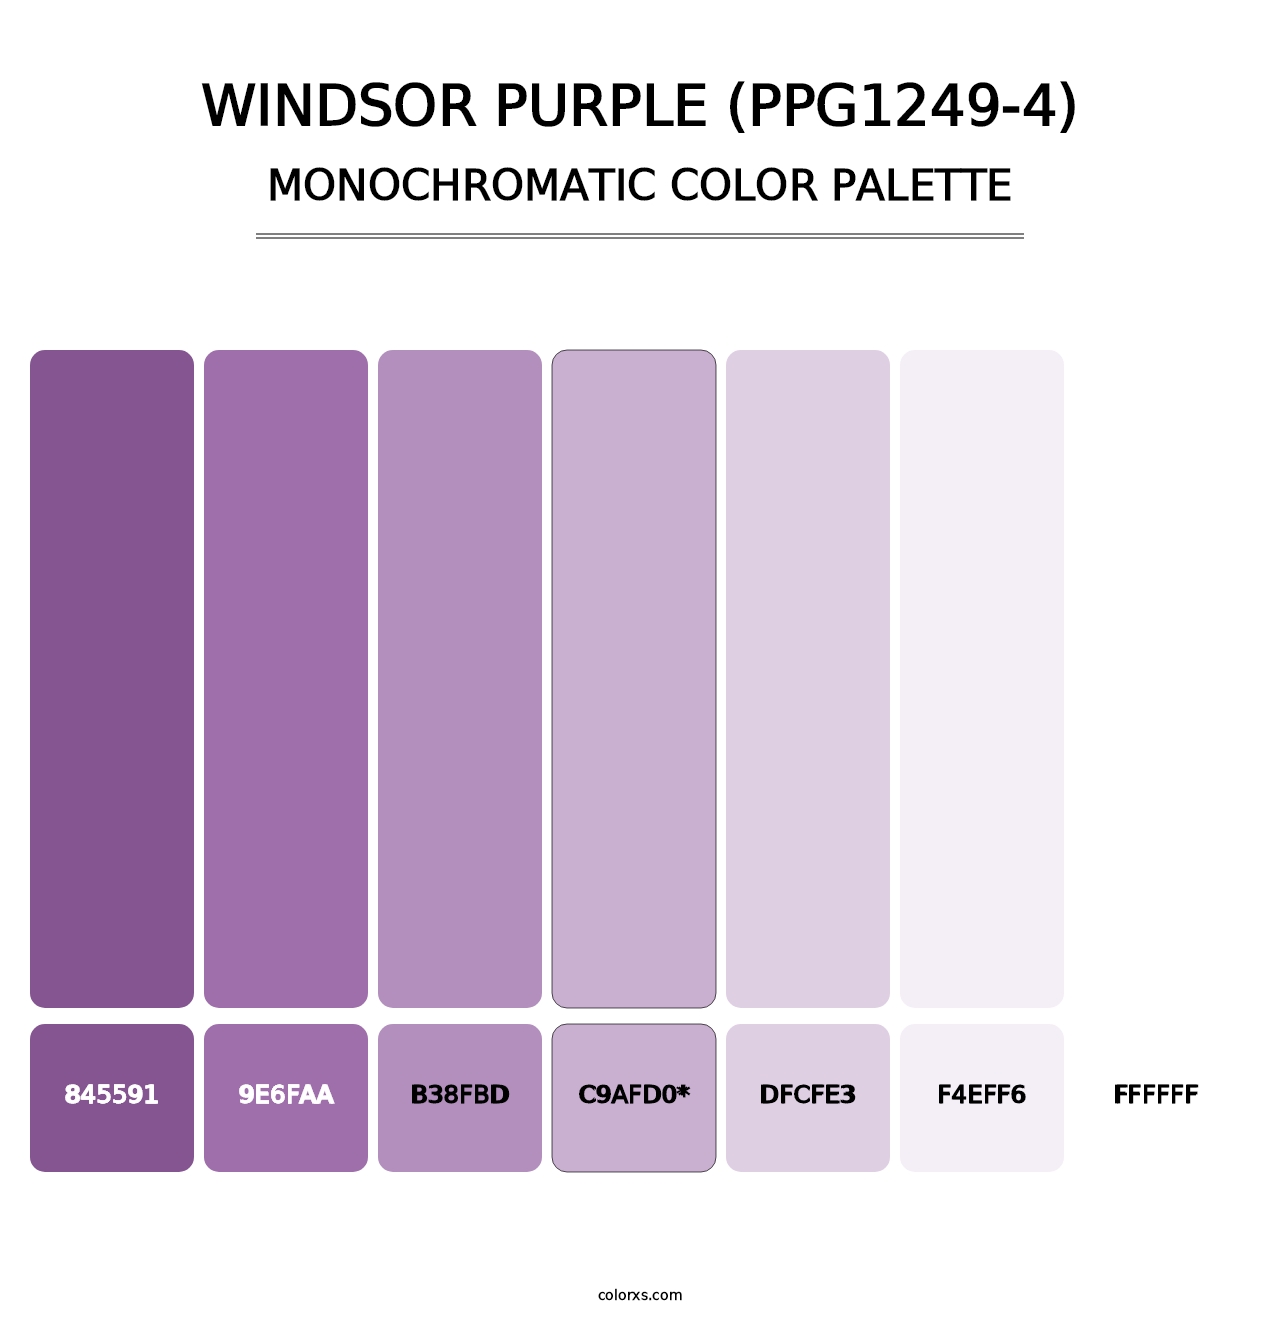 Windsor Purple (PPG1249-4) - Monochromatic Color Palette